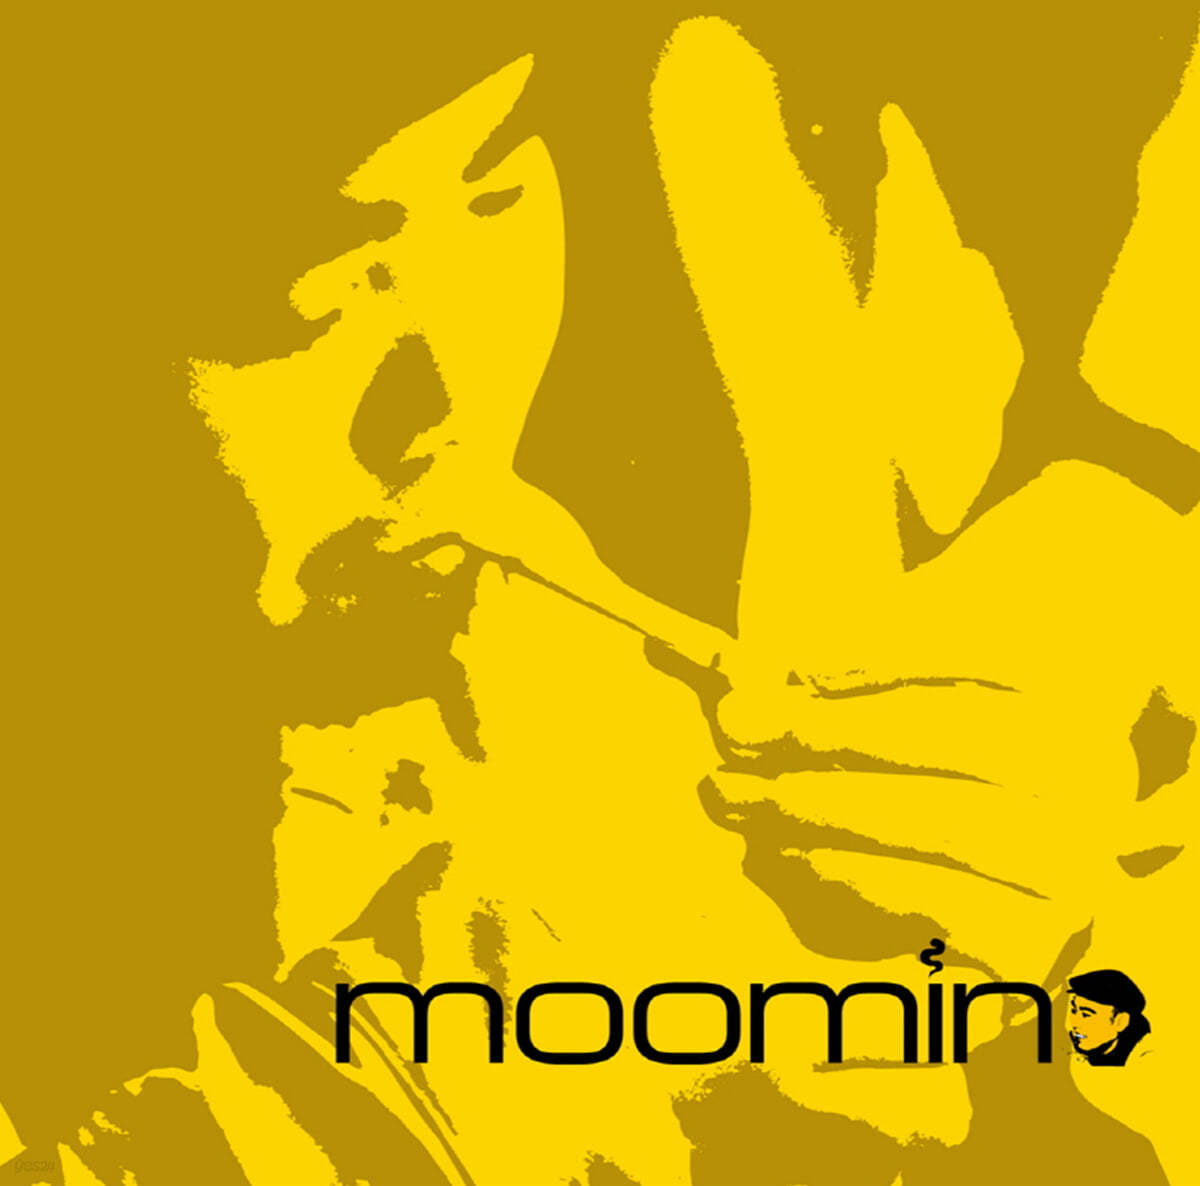 Moomin (무민) - 슬픔이 사라질 때까지 / 너를 생각하는 밤 [7인치 싱글 Vinyl] 